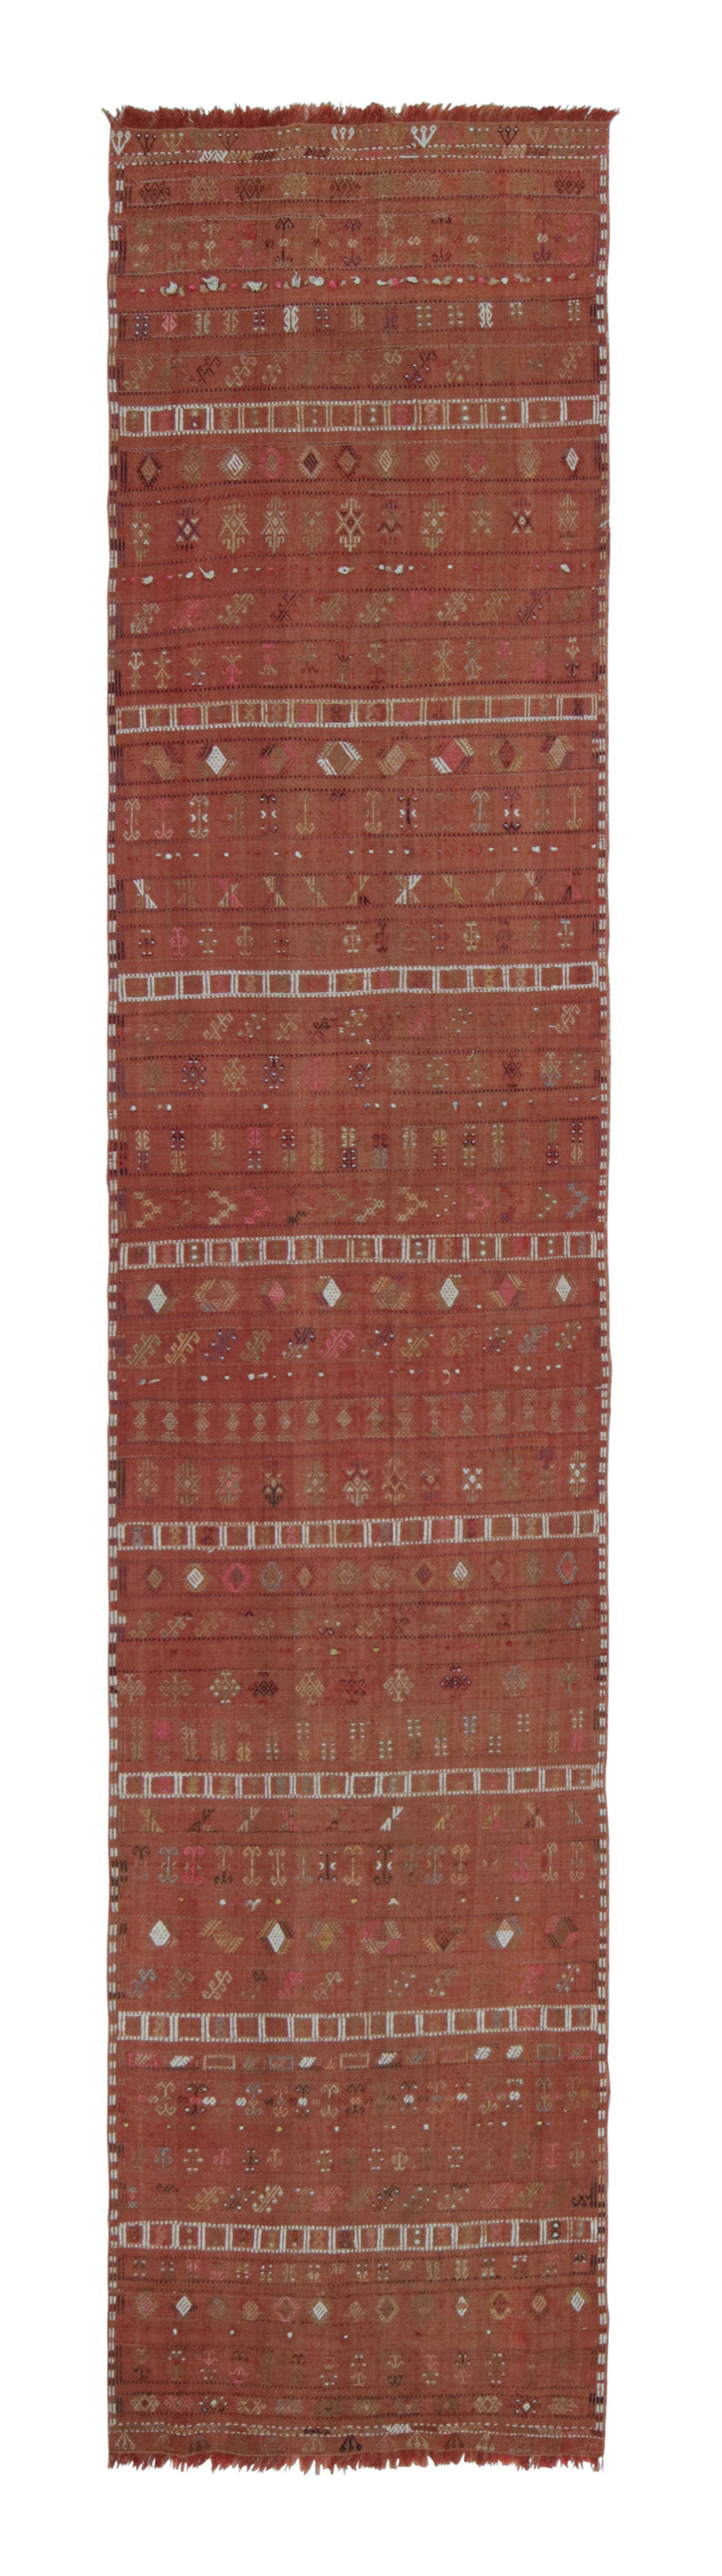 Vintage Sivas Vermillion Red and Beige-Brown Wool Kilim Runner by Rug & Kilim For Sale